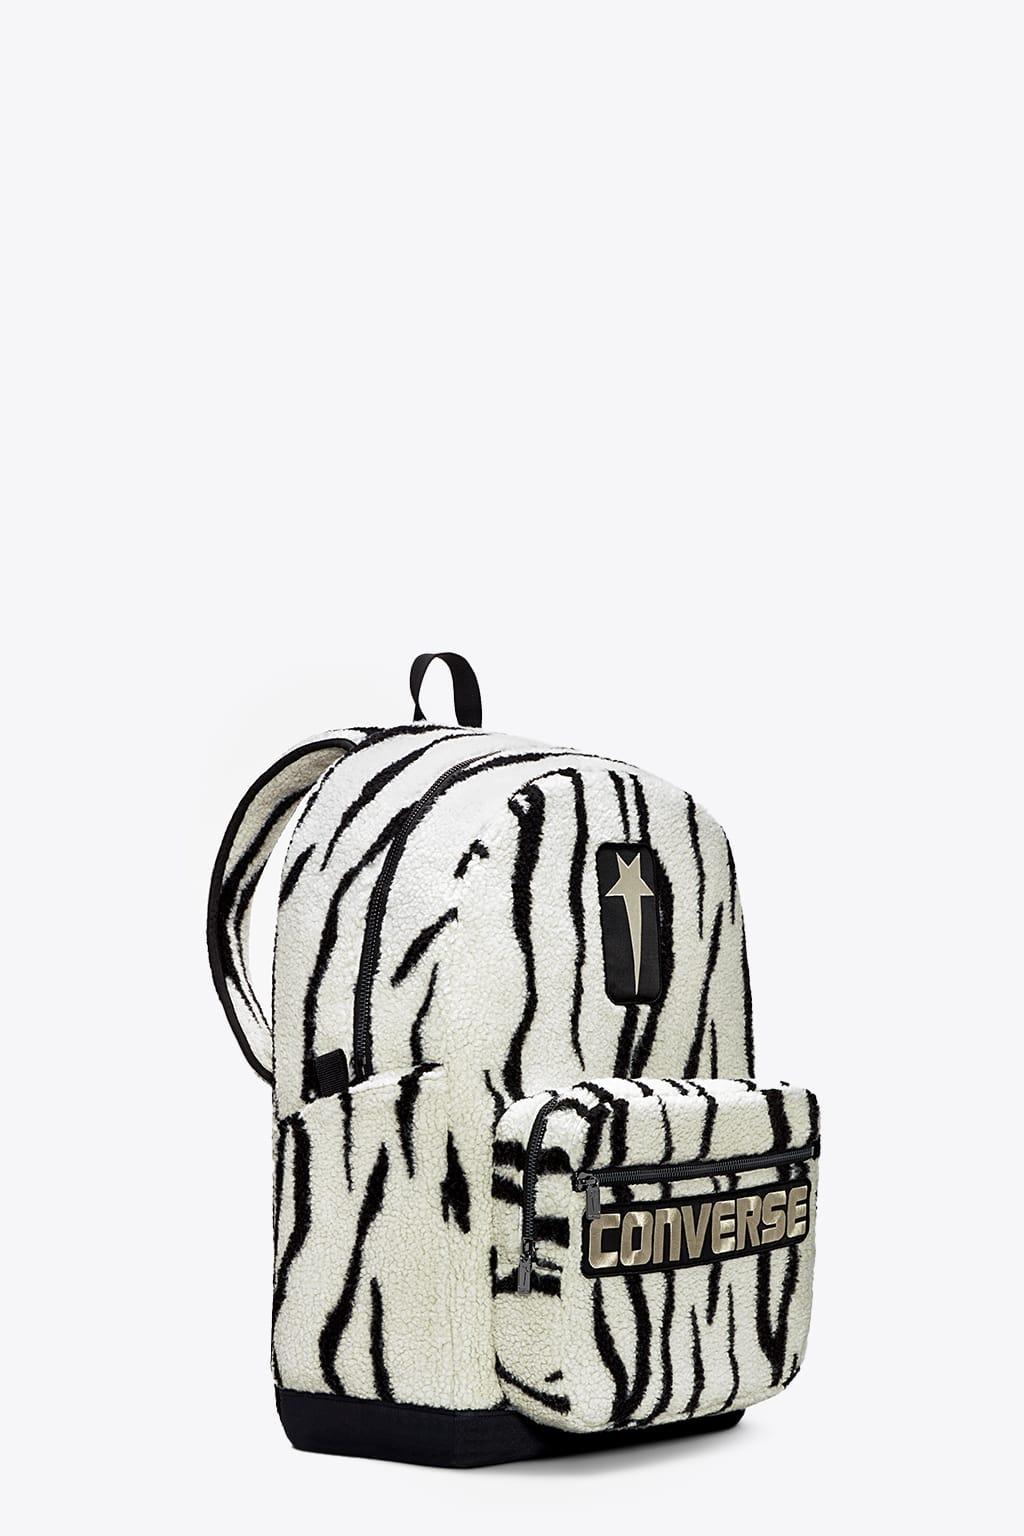 Rick Owens DRKSHDW Oversized Backpack Zebra Printed Converse Backpack -  Oversized Backpack in Black | Lyst